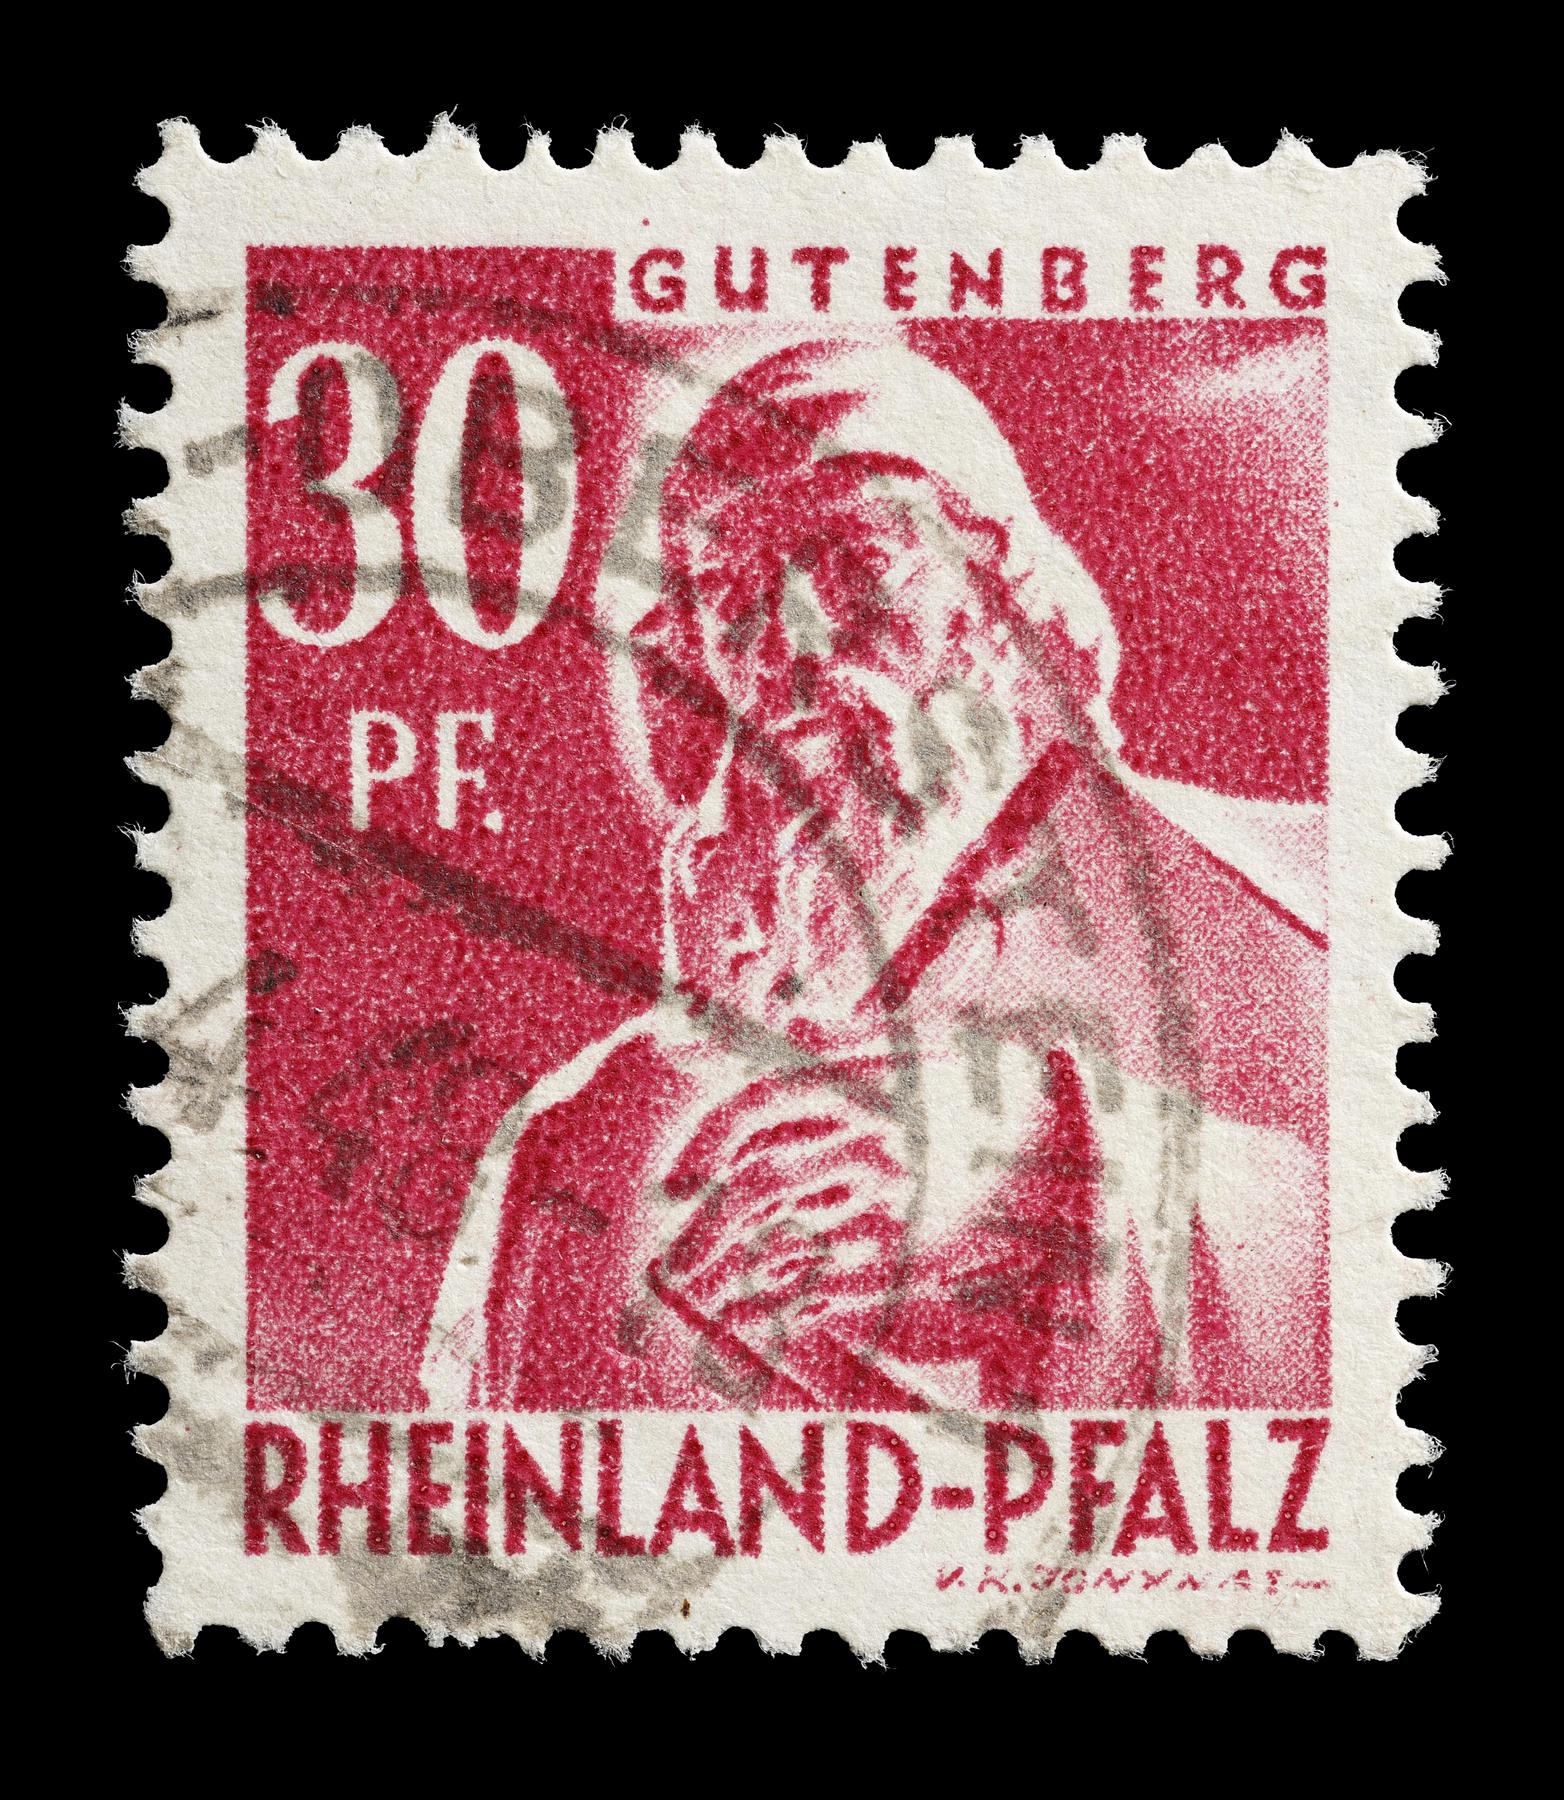 Frimærke udgivet i den franske besættelseszone, Rheinland-Pfalz med Thorvaldsens statue af Johann Gutenberg, E2359